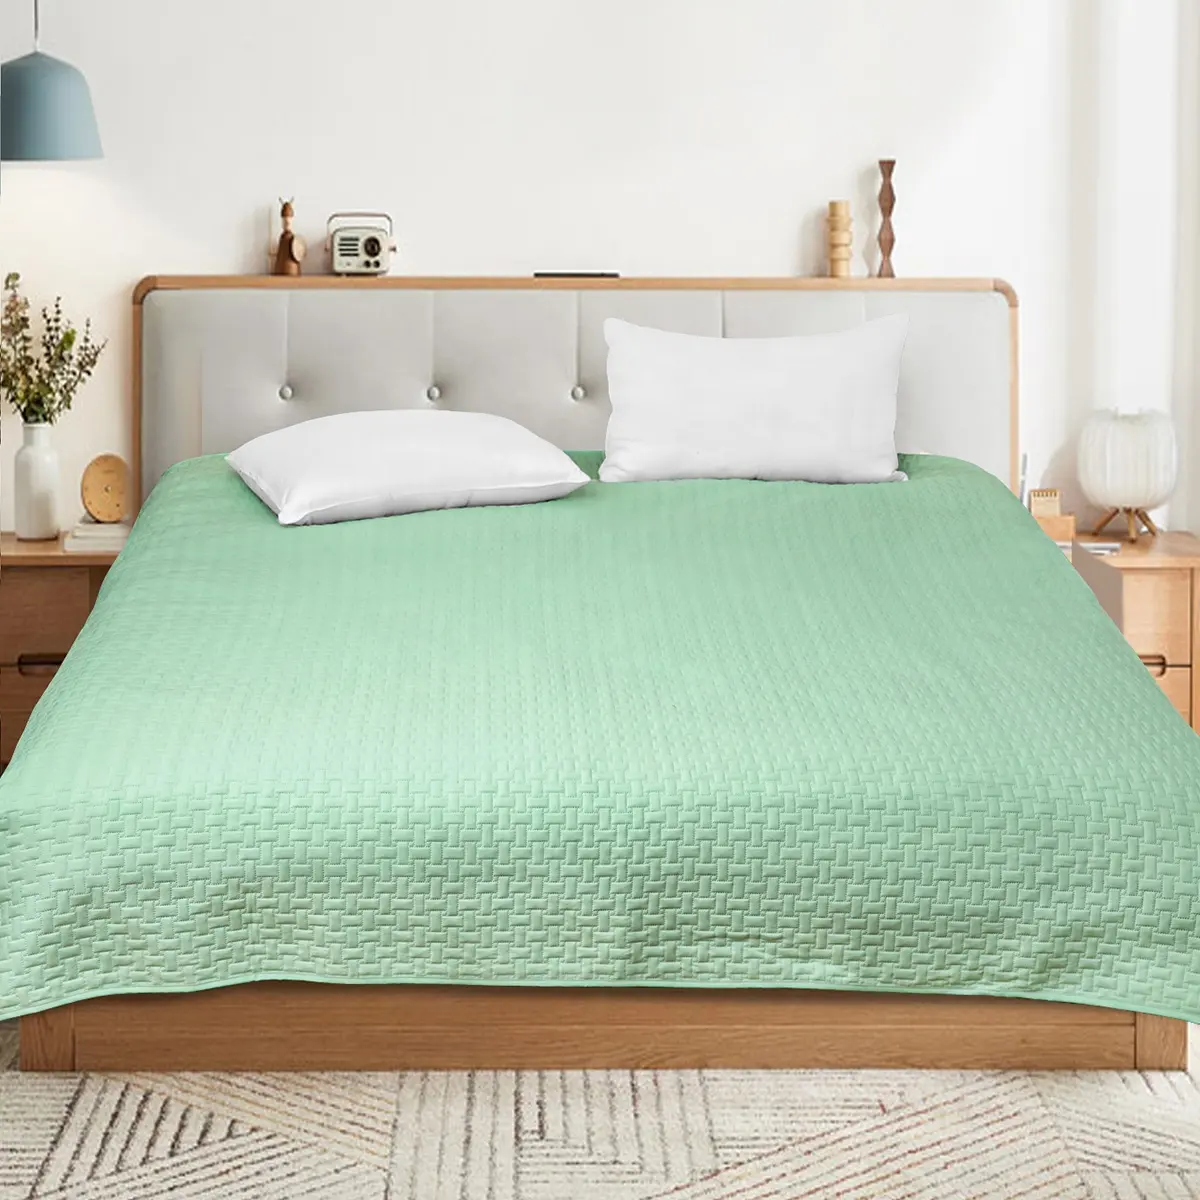 Summer Quilt Set Queen Size  Lightweight blue Bedspread Ultrasonic Pattern Coverlet for All Season Comforter Bedding Decor